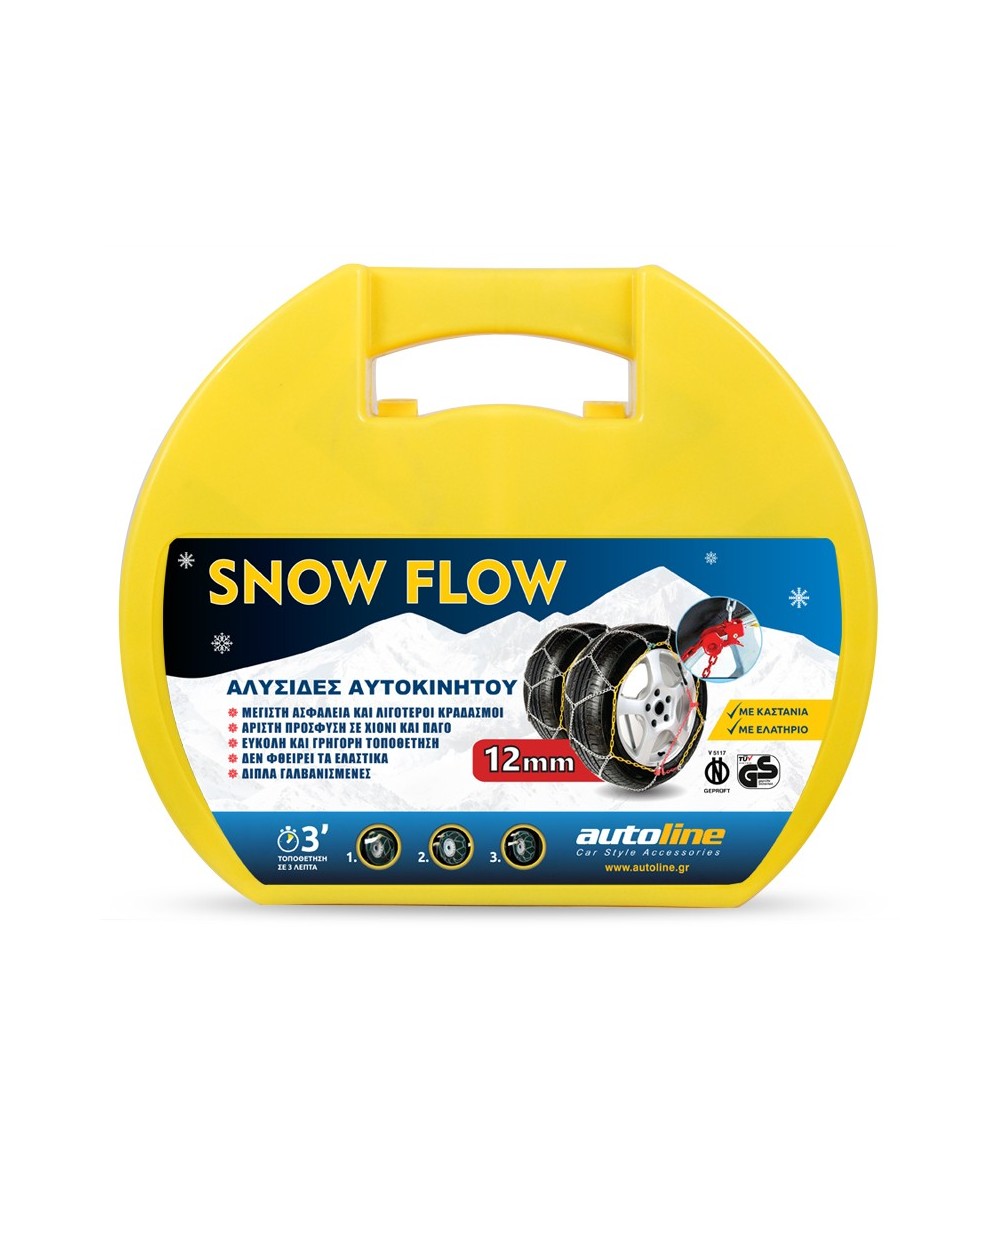 ΑΛΥΣΙΔΕΣ SNOW FLOW 12mm KN70